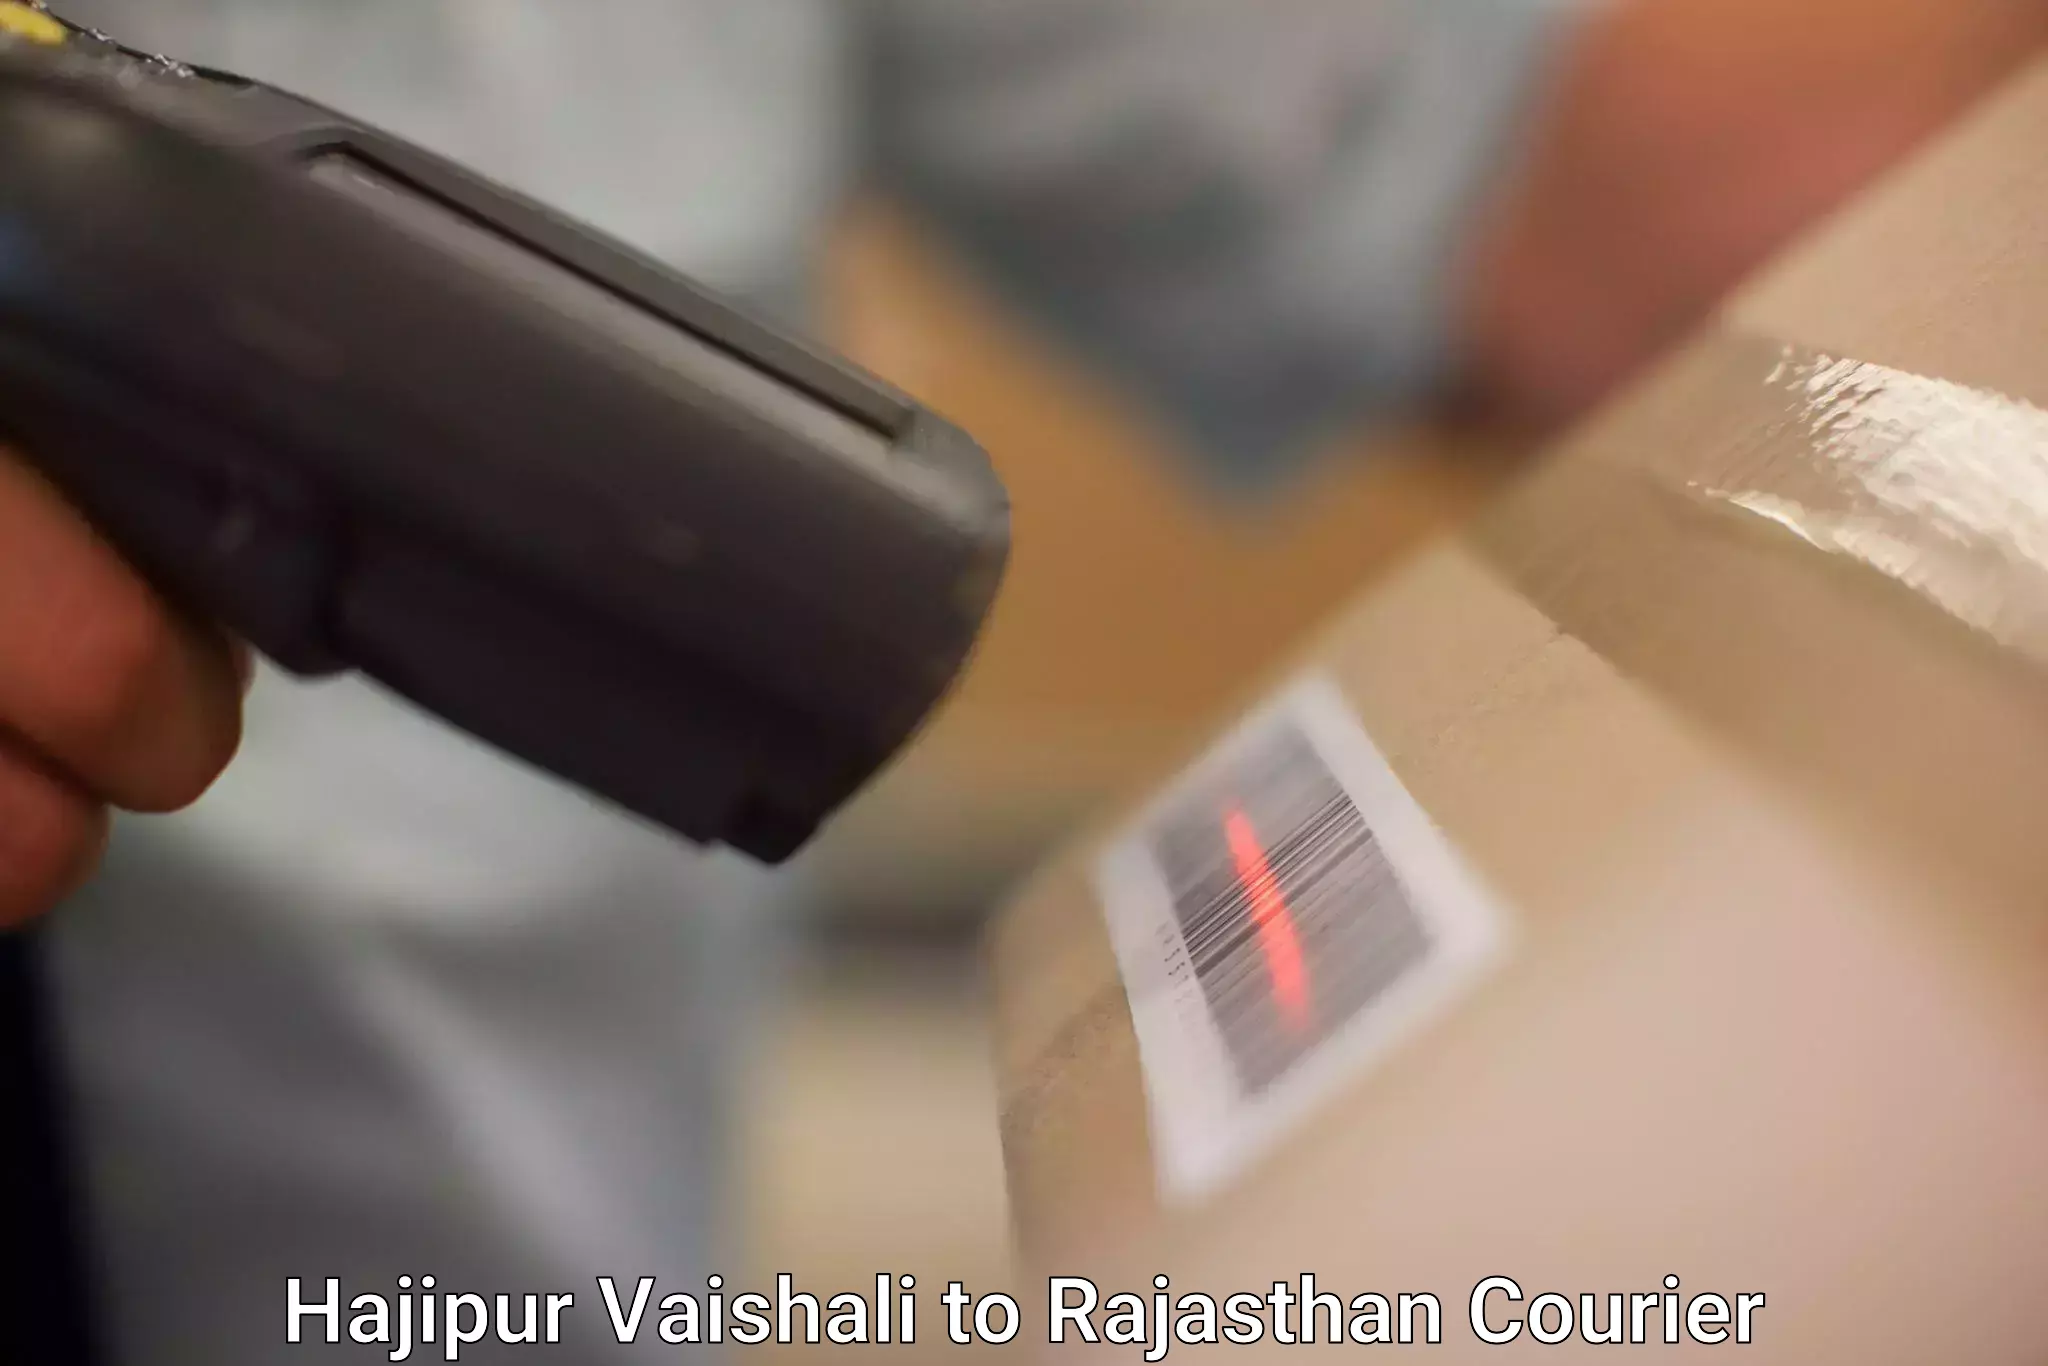 Courier services Hajipur Vaishali to Shahpura Jaipur